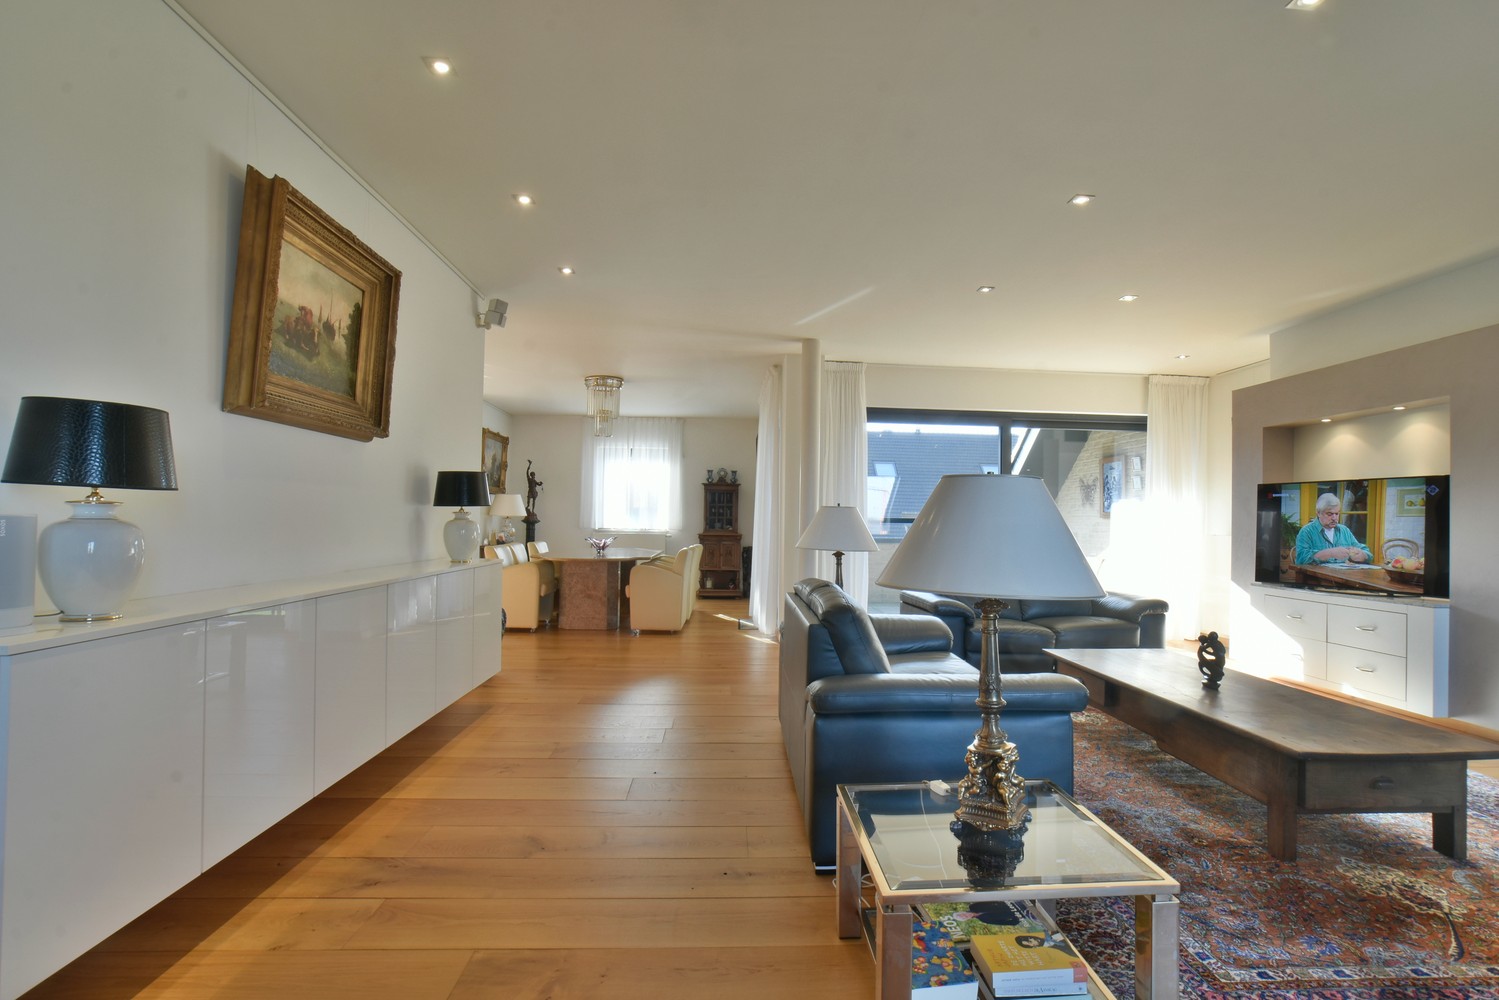 Klassevol penthouse van 318 m² met 4 slaapkamers, 2 badkamers en 2 garages, rustig gelegen in het centrum van Lanaken foto 2